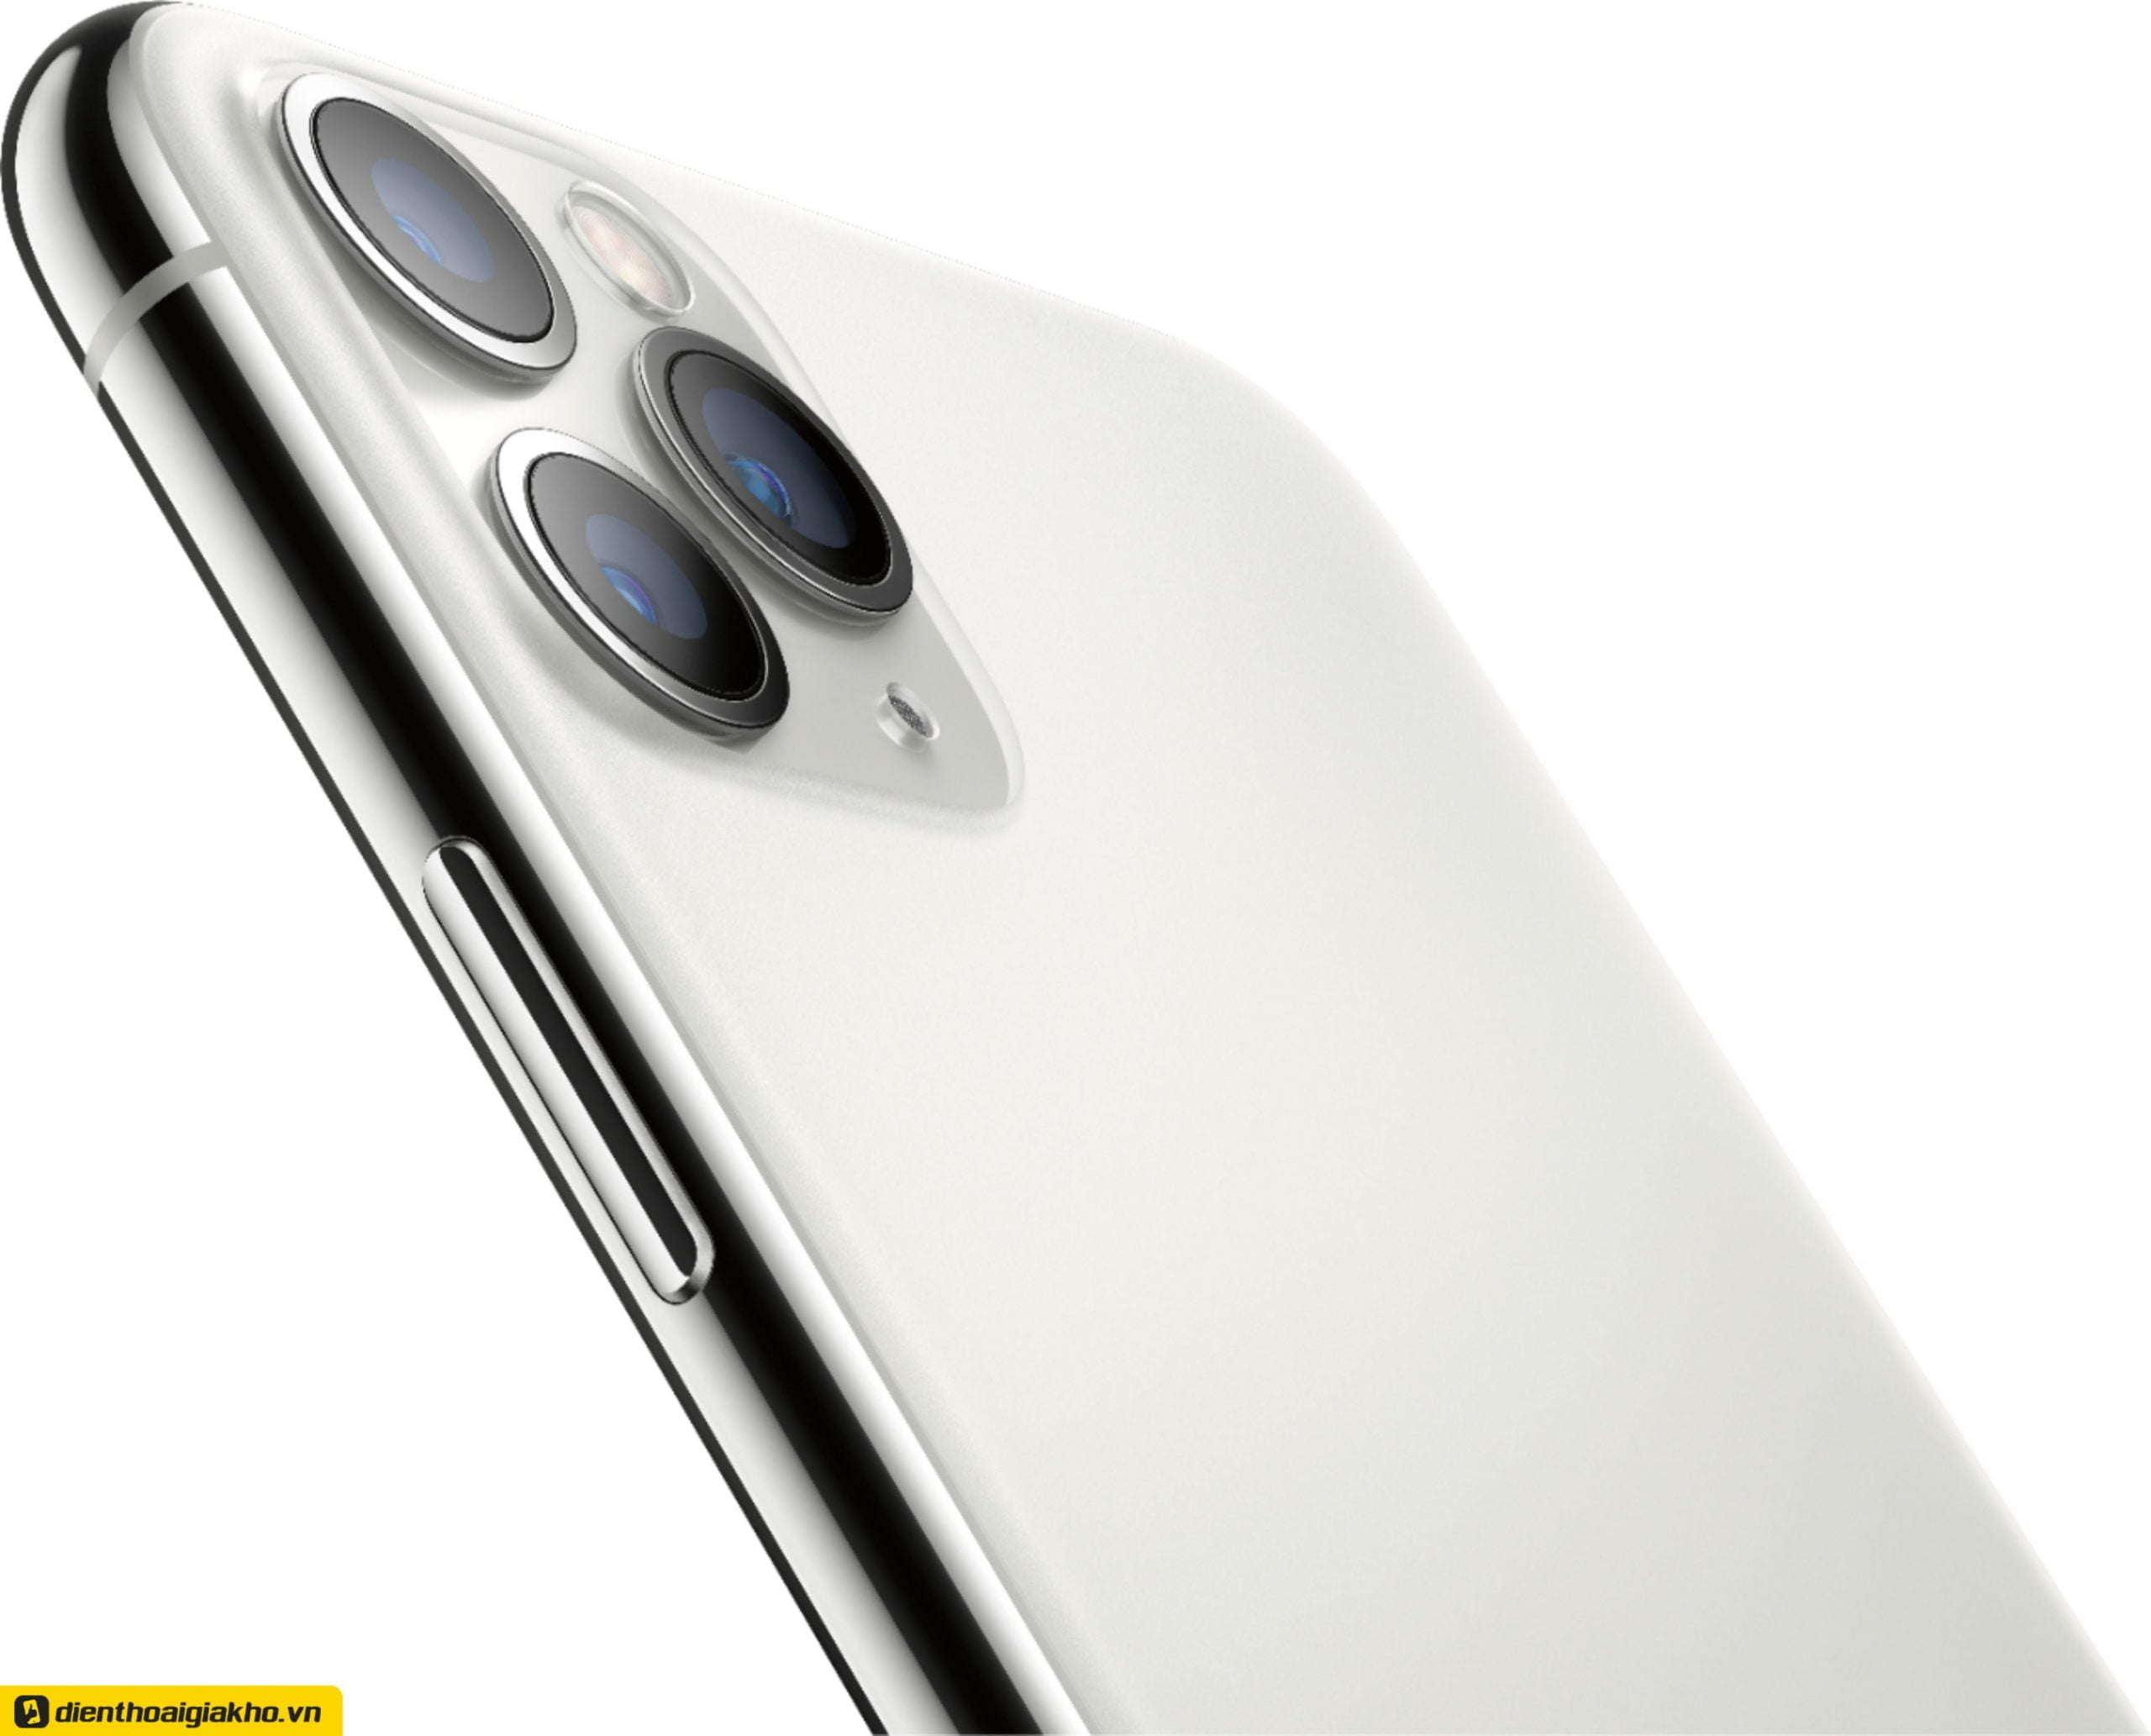 iPhone 11 Pro màu trắng có thiết kế mặt kính giúp hạn chế trầy xước và để lại dấu vân tay